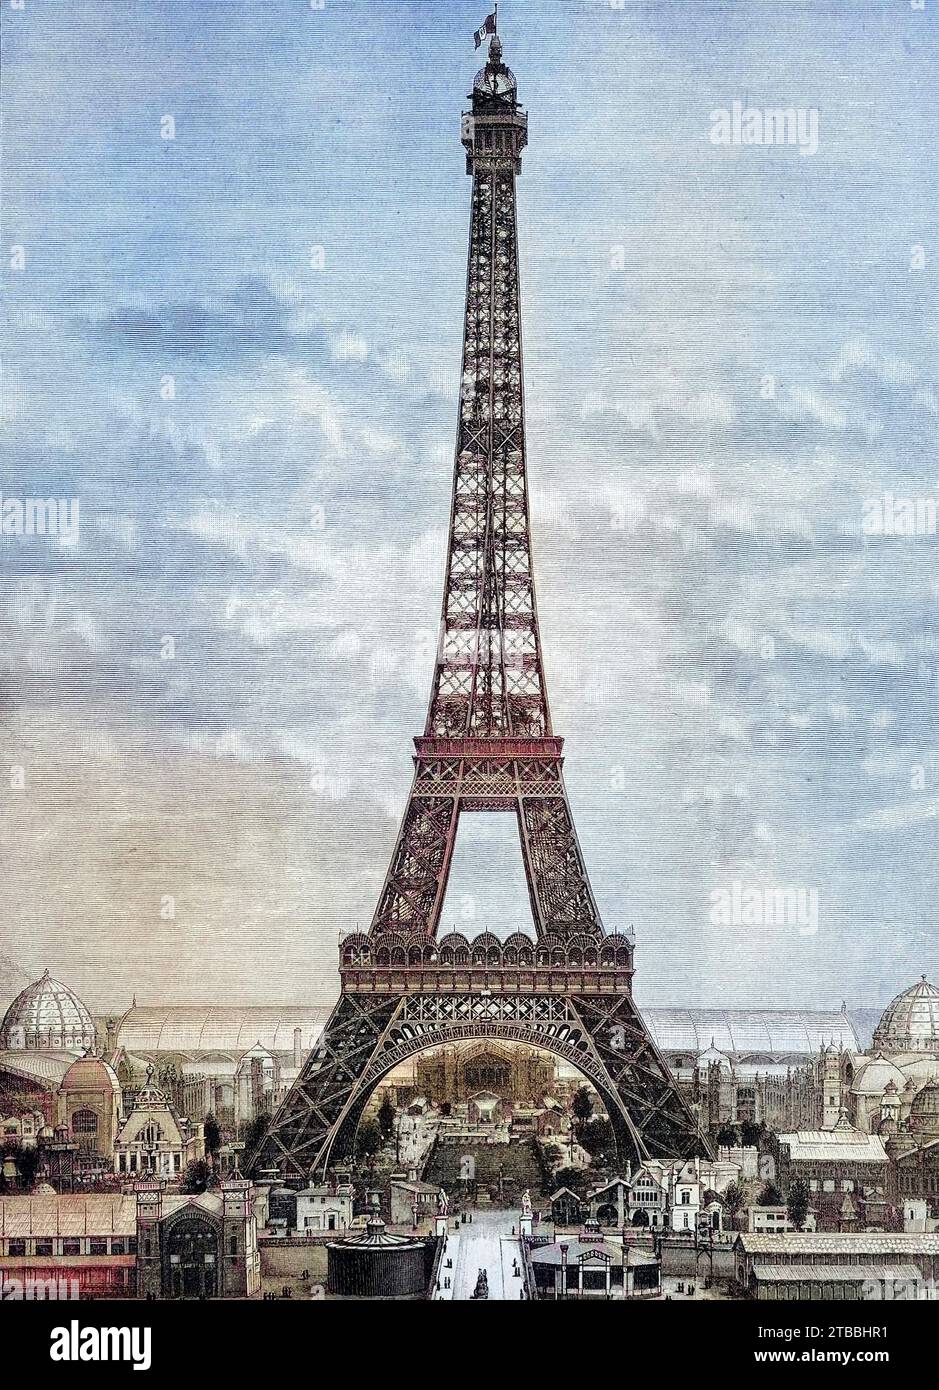 Der Eiffelturm im Jahre 1888, Paris, Frankreich, Historisch, digital restaurierte Reproduktion von einer Vorlage aus dem 19. Jahrhundert  /  The Eiffel Tower in 1888, Paris, France, Historical, digitally restored reproduction from a 19th century original Stock Photo